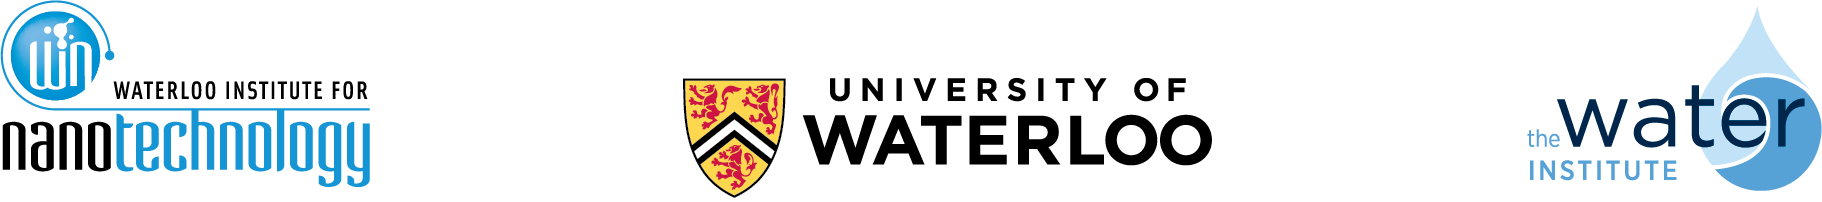 3 institute logos